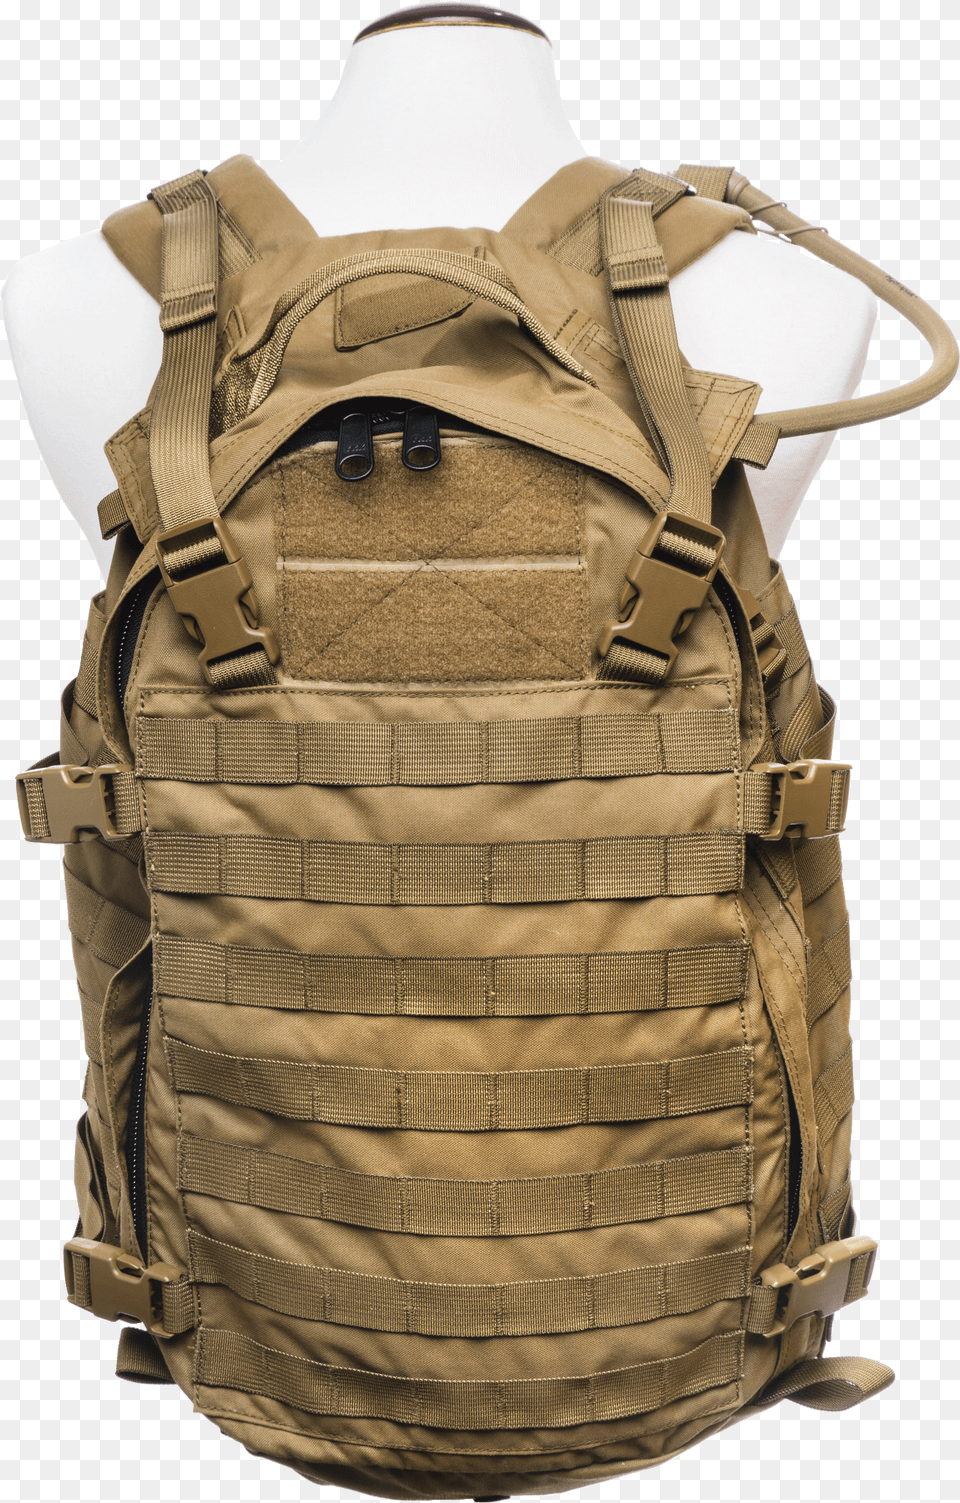 Lightassaultpack Front Clip1 Vest, Bag, Clothing, Backpack Free Transparent Png